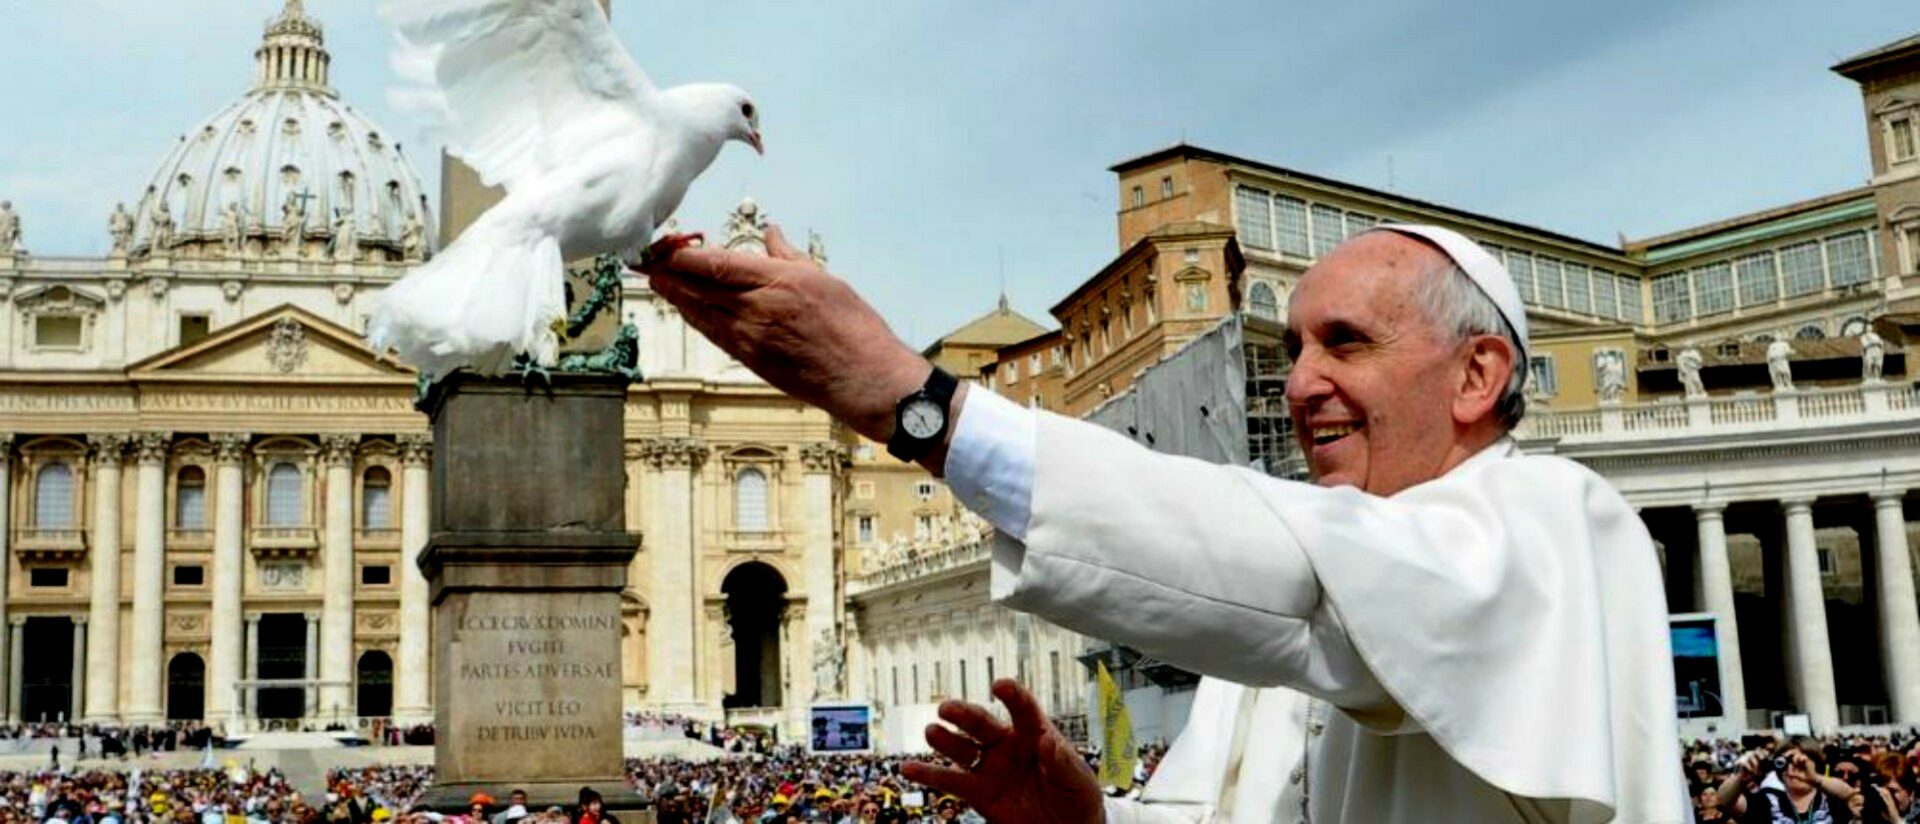 Lors de la 53e journée mondiale de la paix, le pape François affirme que "la paix est un chemin d'espoir" | © Vatican Media 